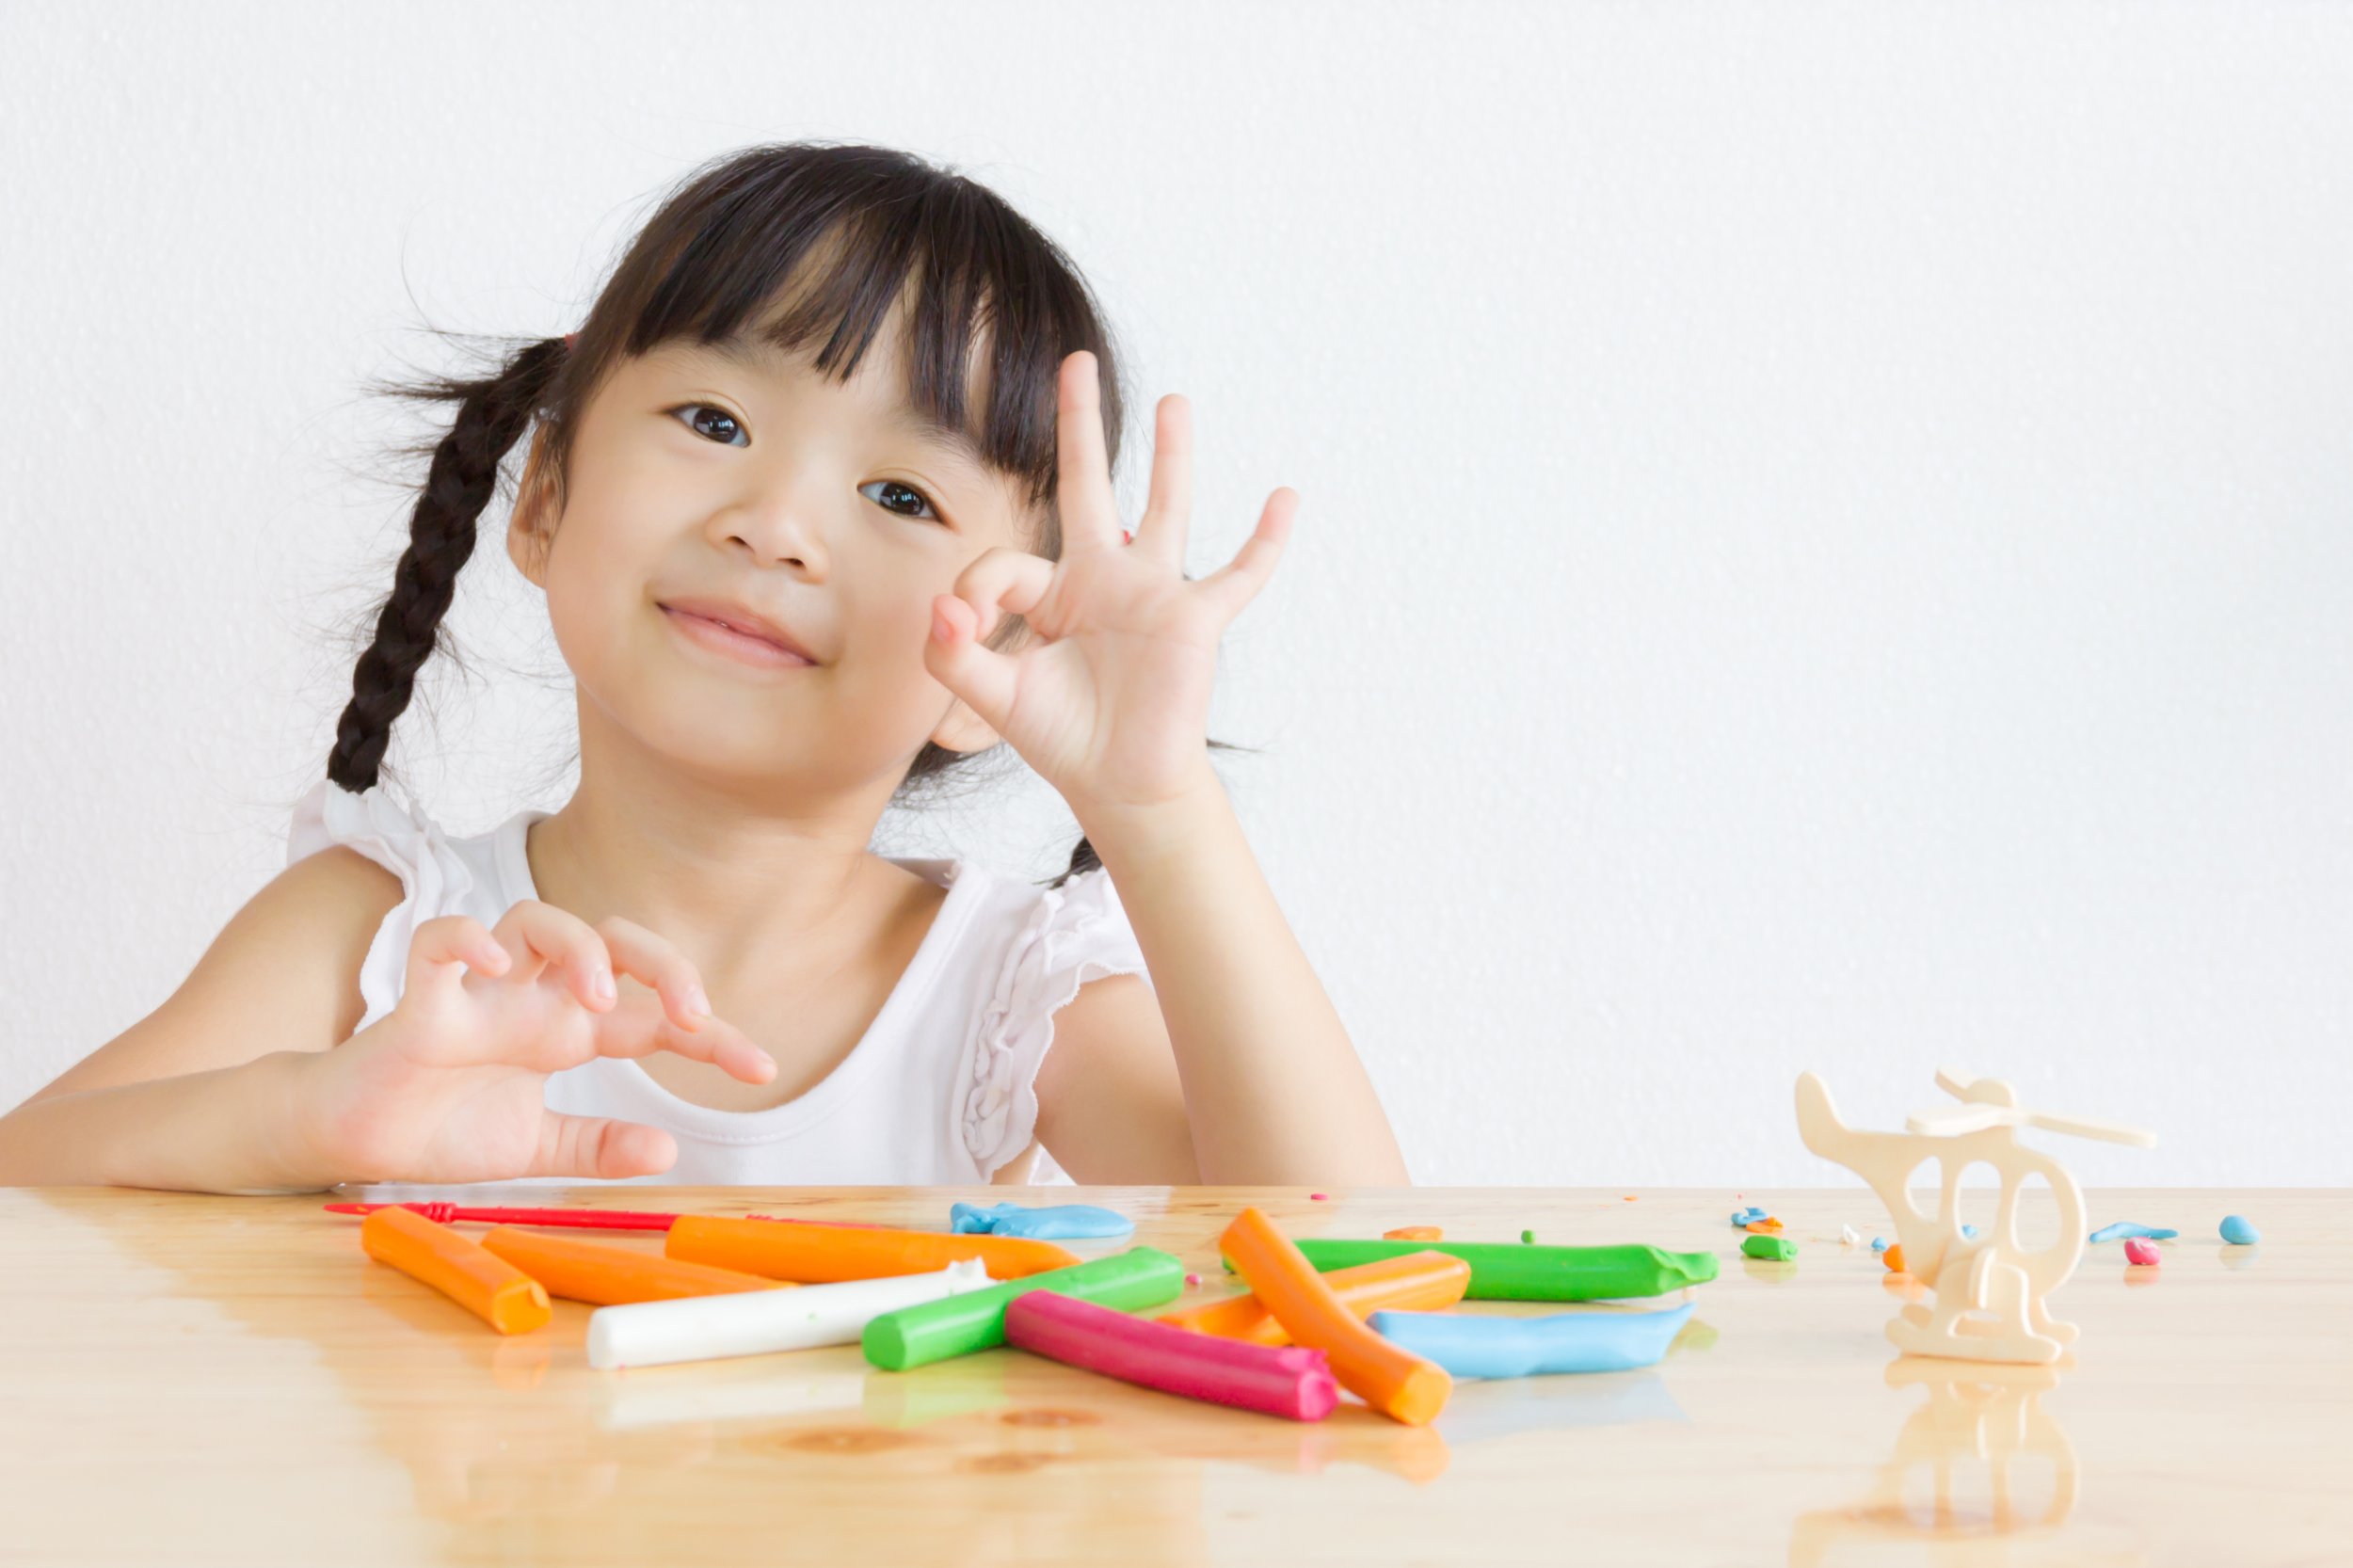 Bagaimana cara mengembangkan kreativitas anak usia dini?